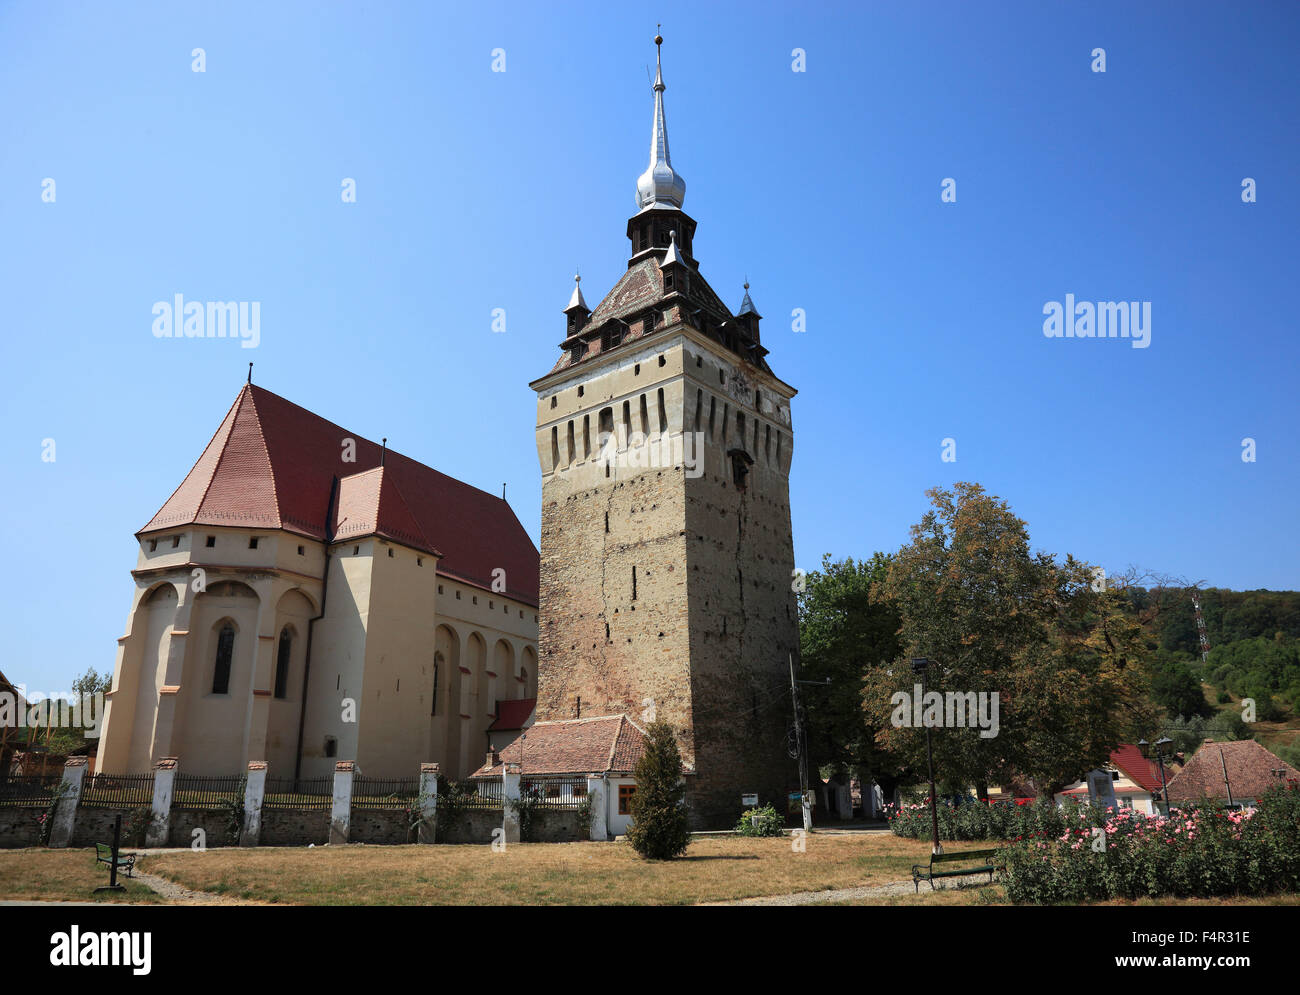 Église protestante construite dans le style gothique de 1496 à Saschiz, est un village de Transylvanie, Roumanie Banque D'Images